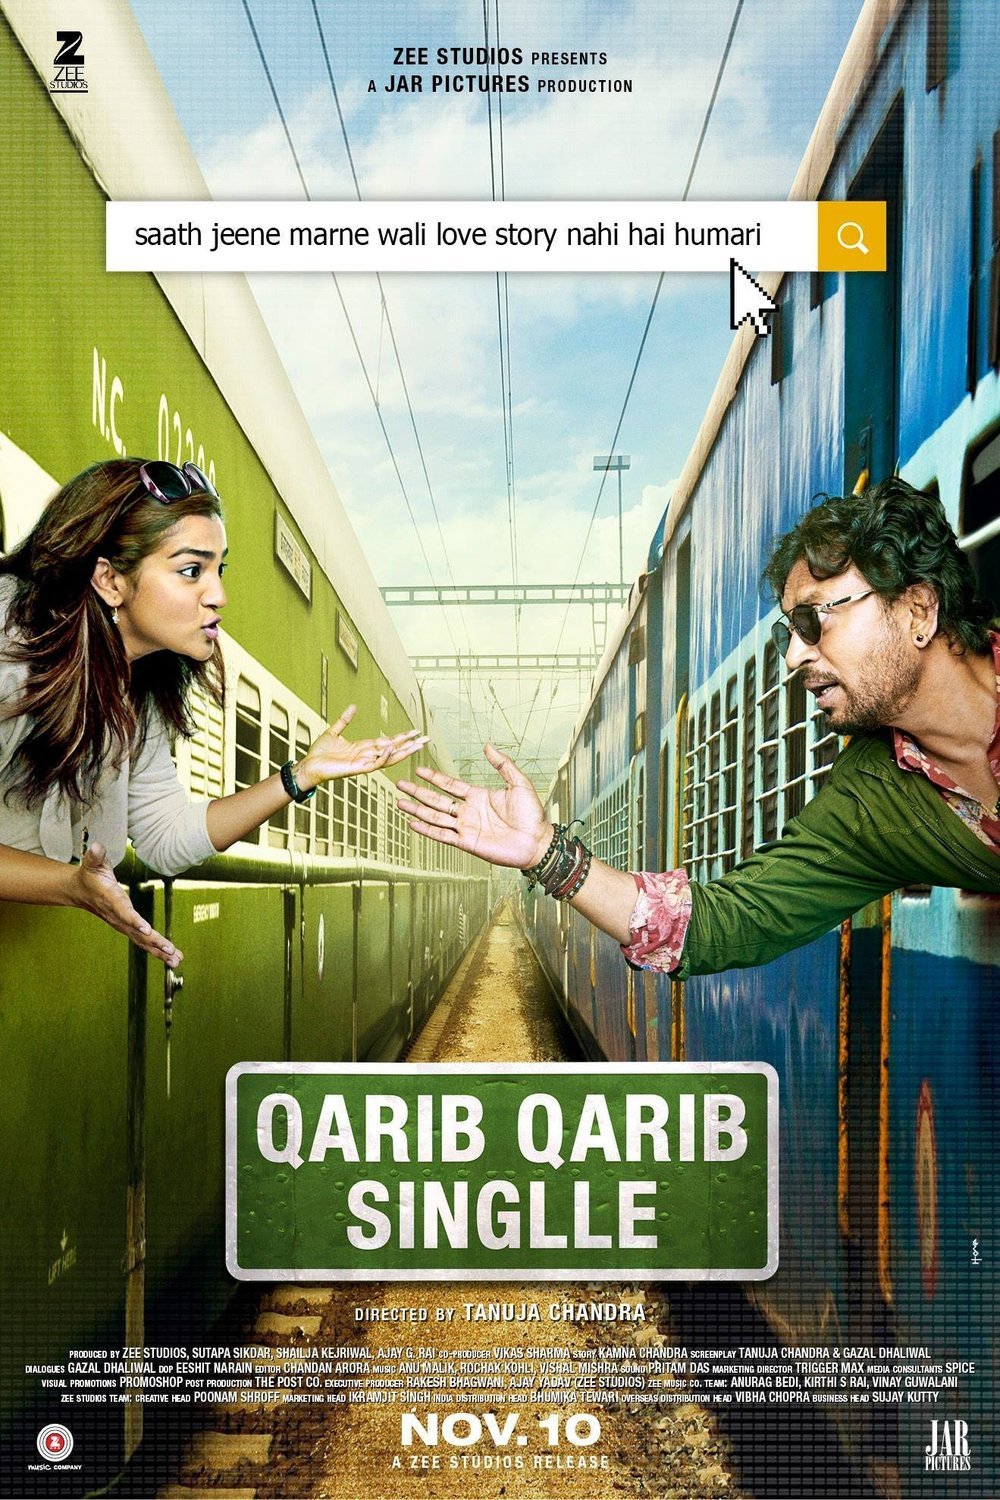 Poster of the movie Qarib Qarib Singlle